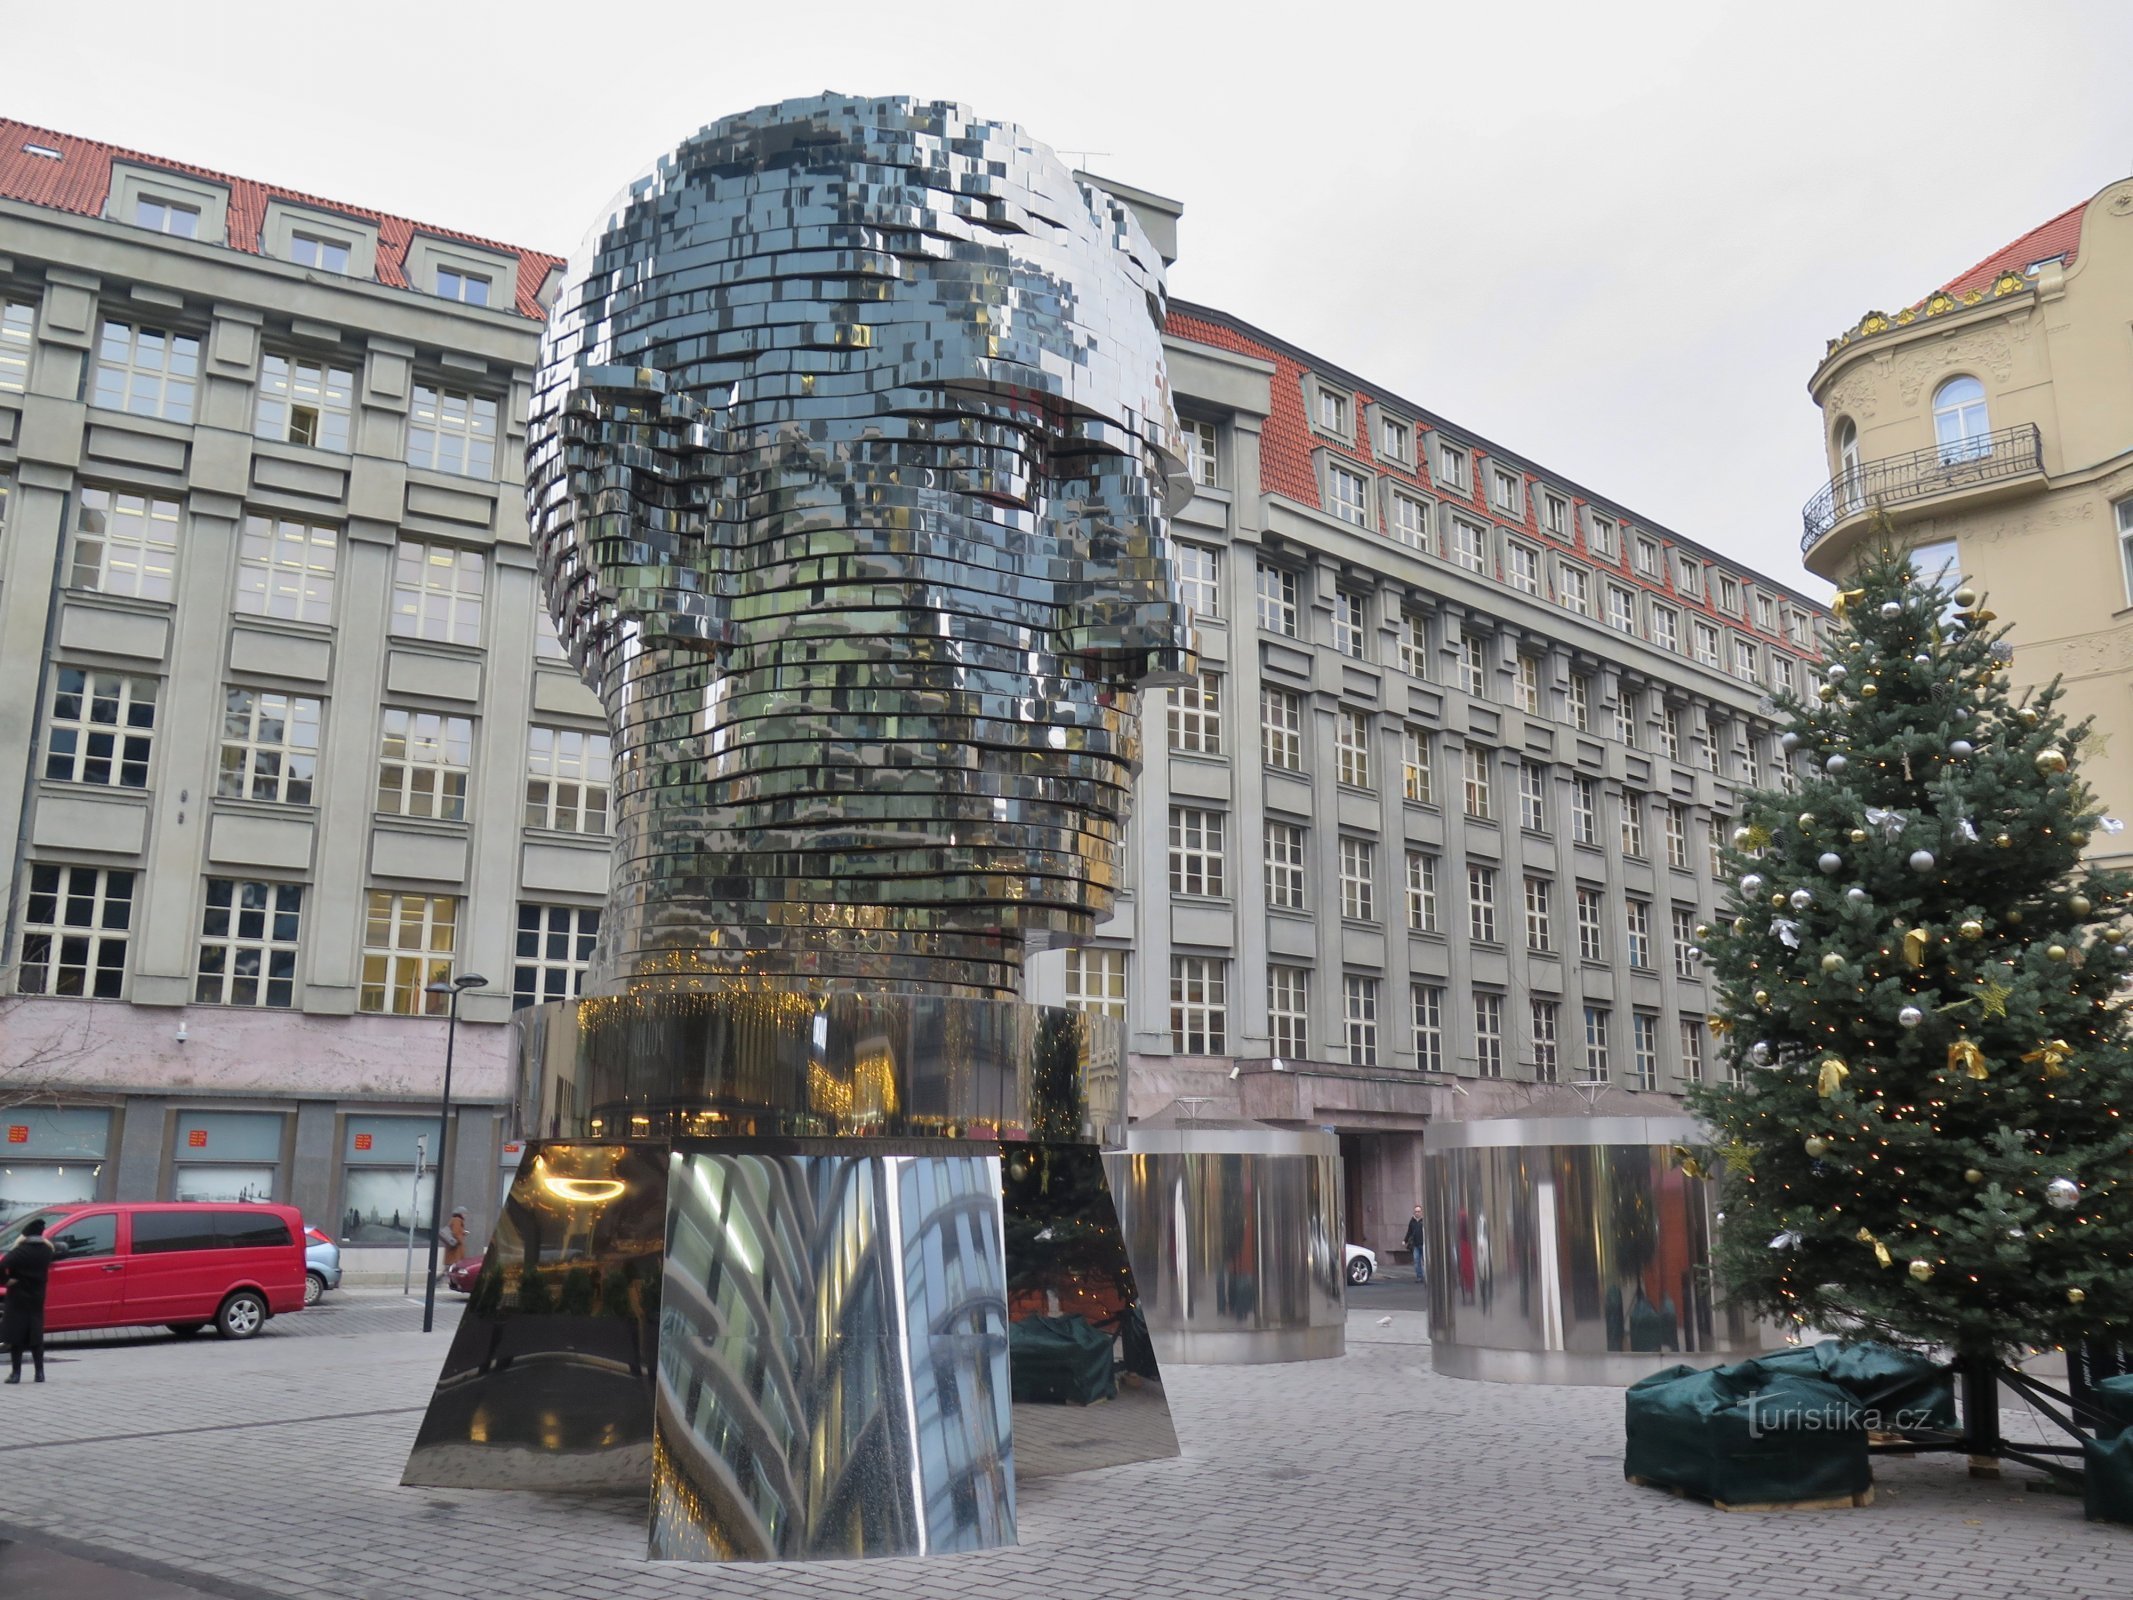 Prag - New Town - Franz Kafkas gigantiske bevægende hoved